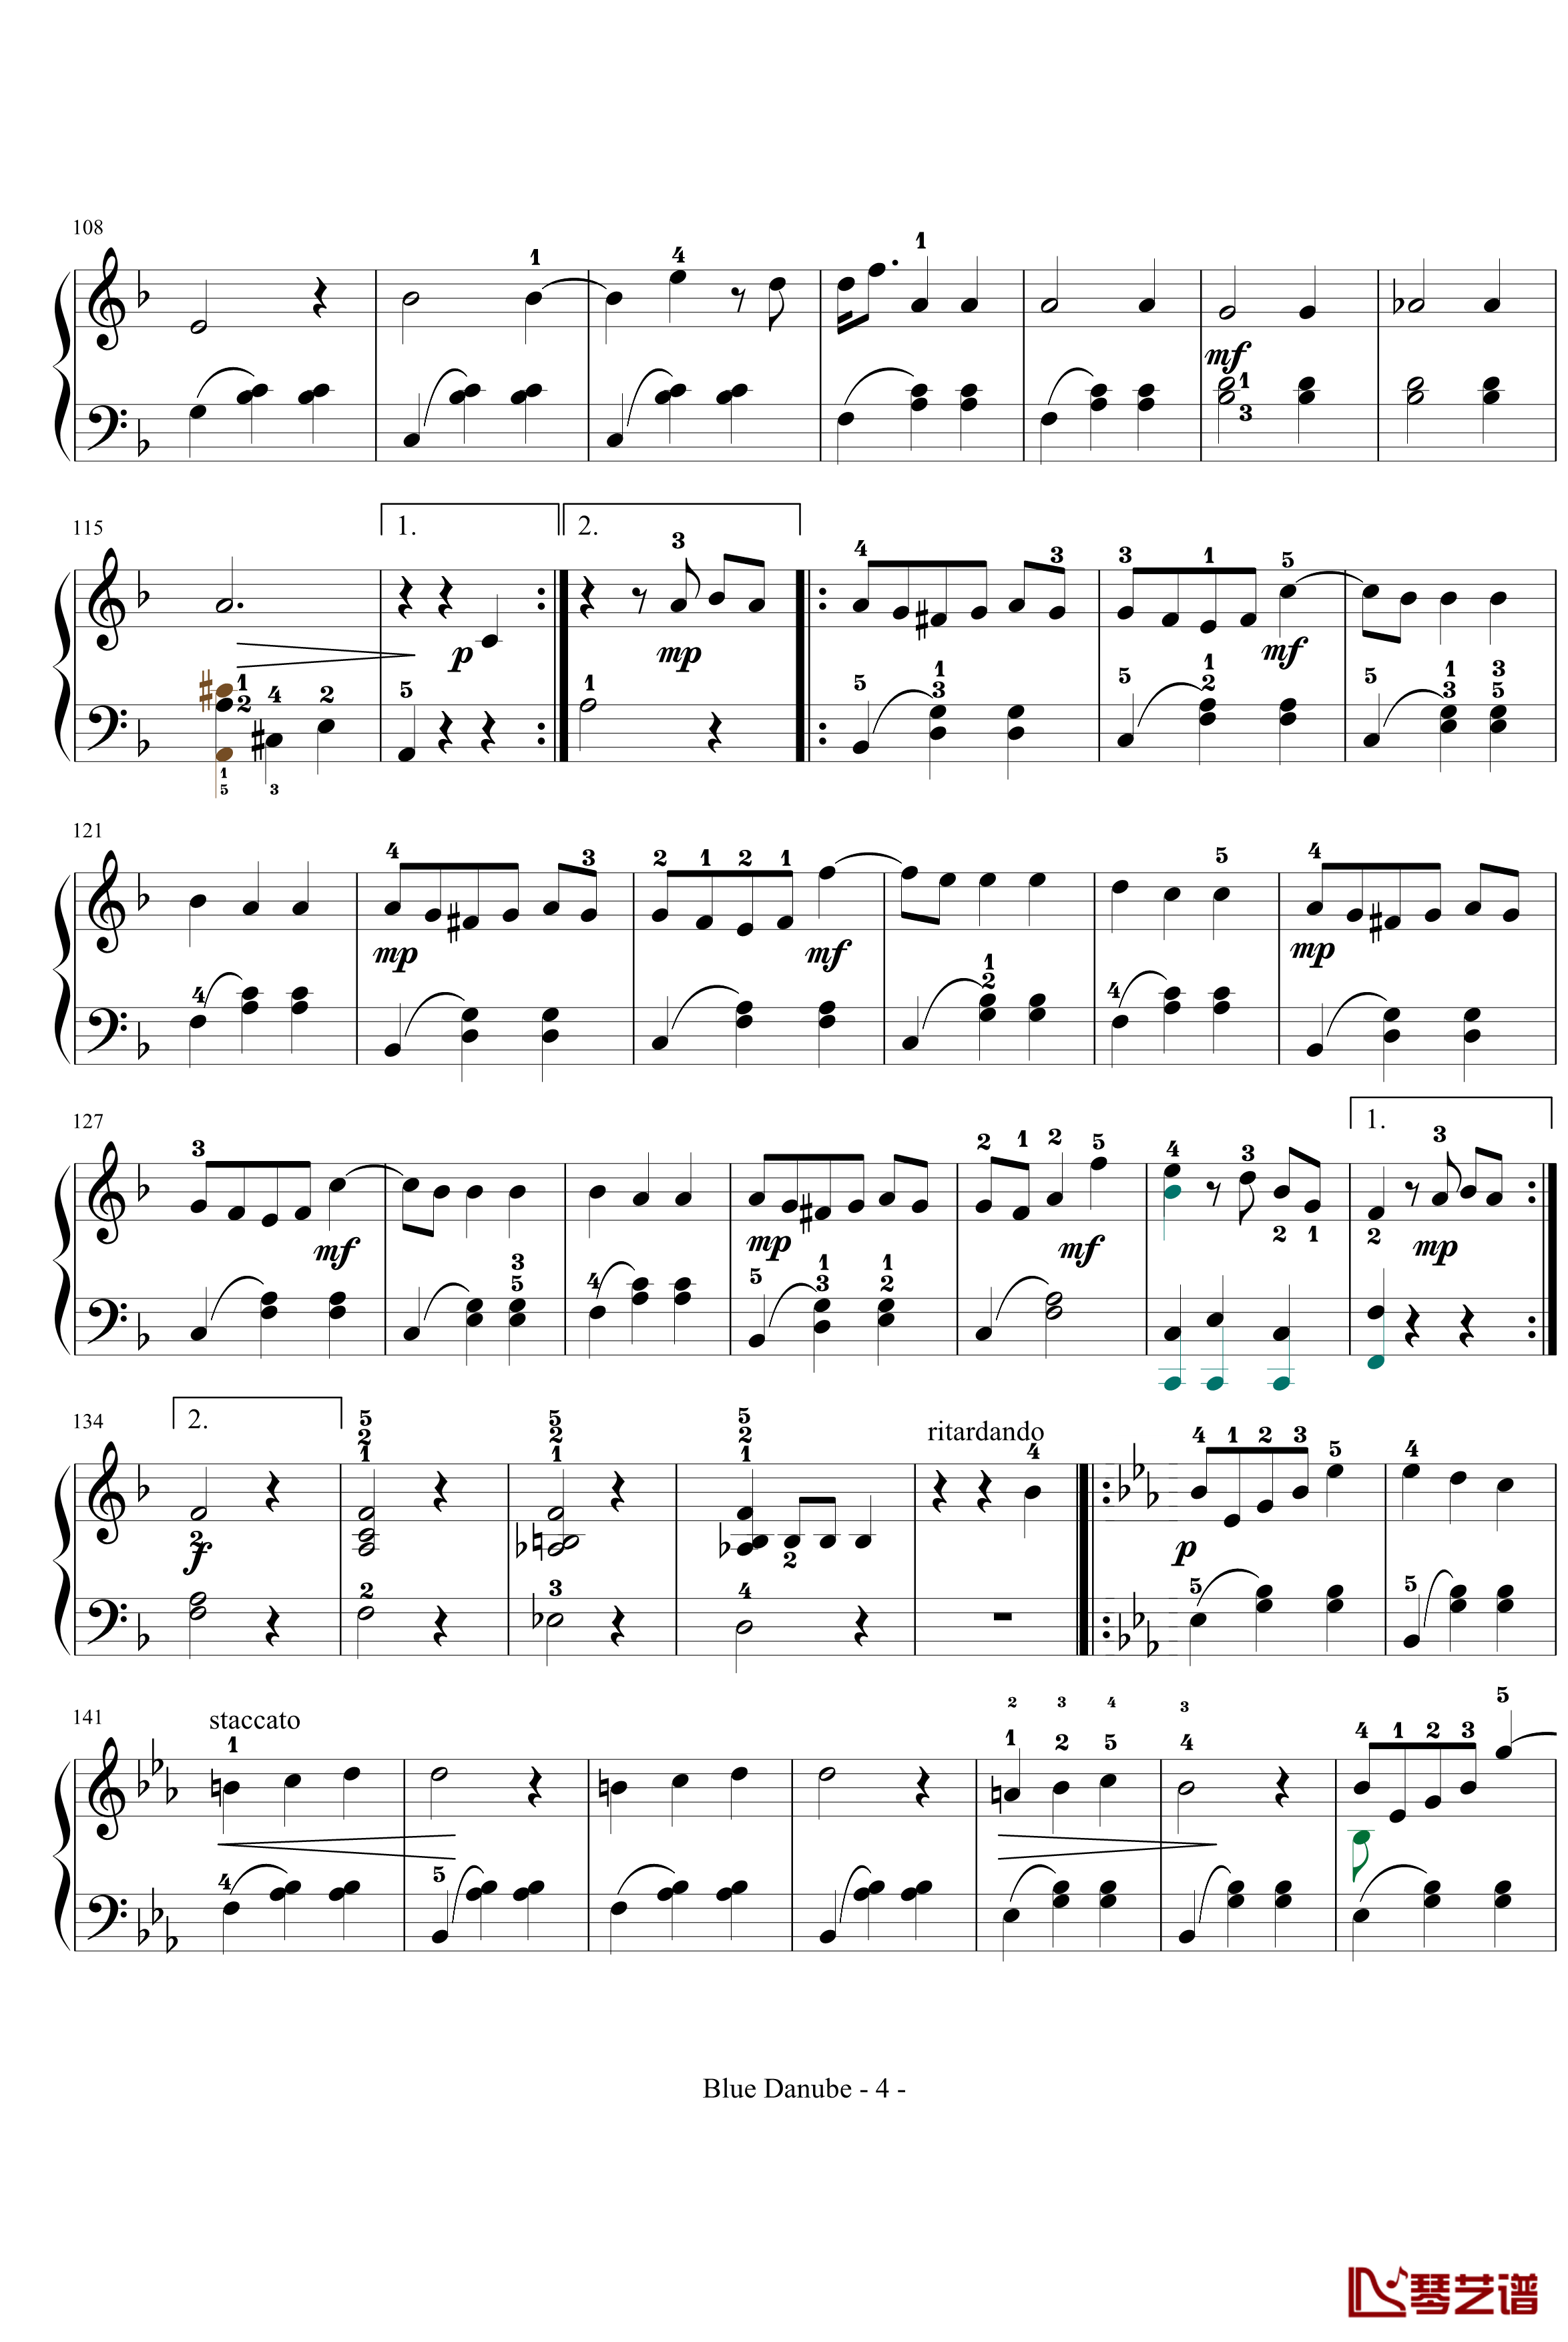 蓝色多瑙河钢琴谱-完整-带指法简化-约翰·斯特劳斯4